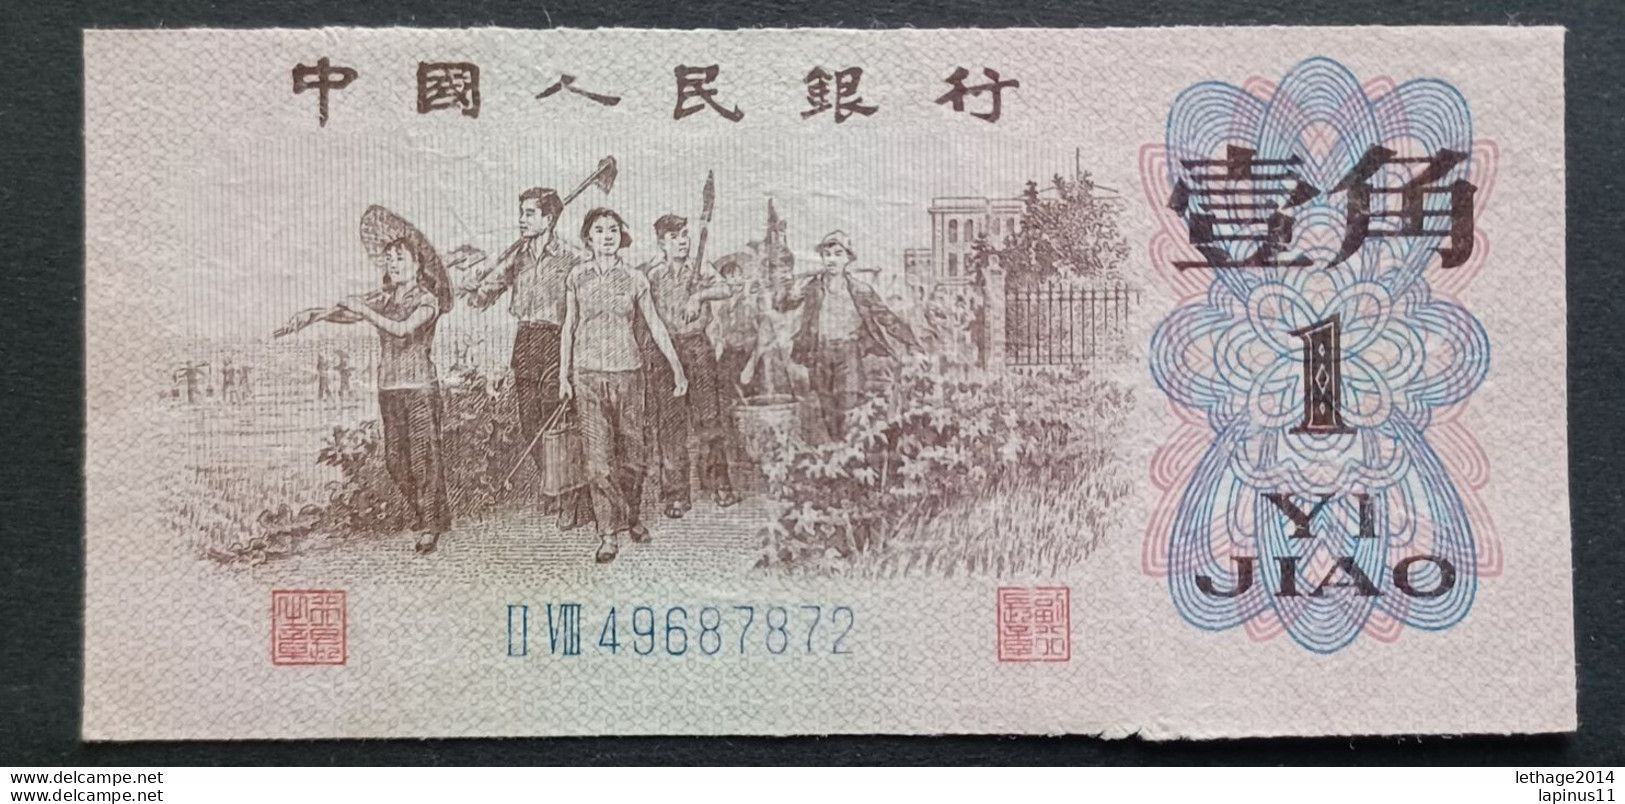 BANKNOTE CINA ZHONGGUO RENMI YINHANG 1 YI JIAO 1962 UNCIRCULATED - Chine